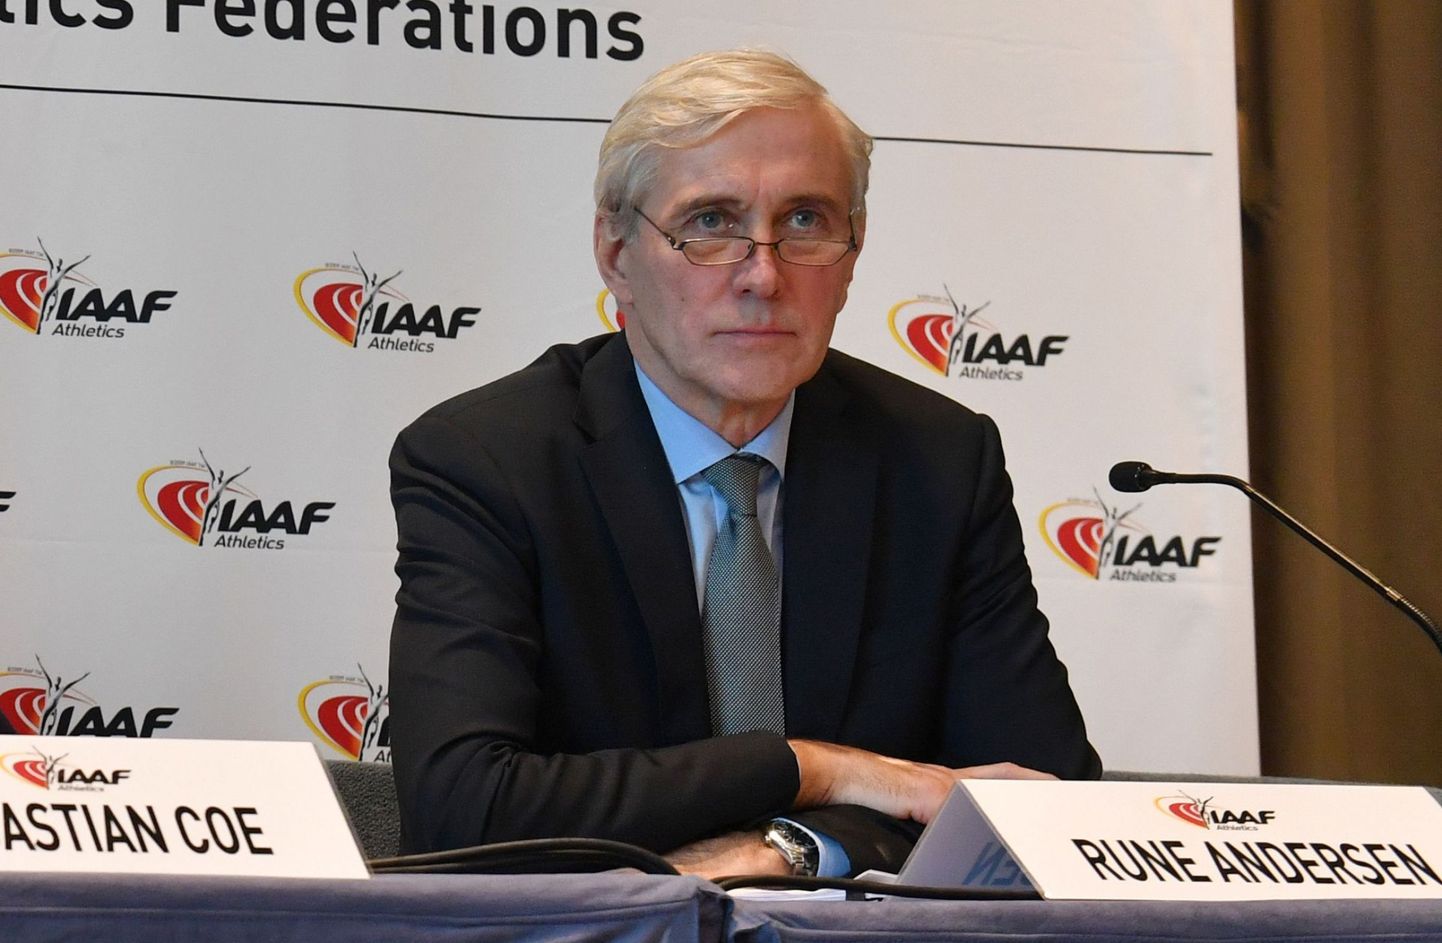 Rune Andersen teatas, et Venemaa pole jätkuvalt täitnud nõudmisi, et nad tagasi IAAFi sportlasperre lubataks